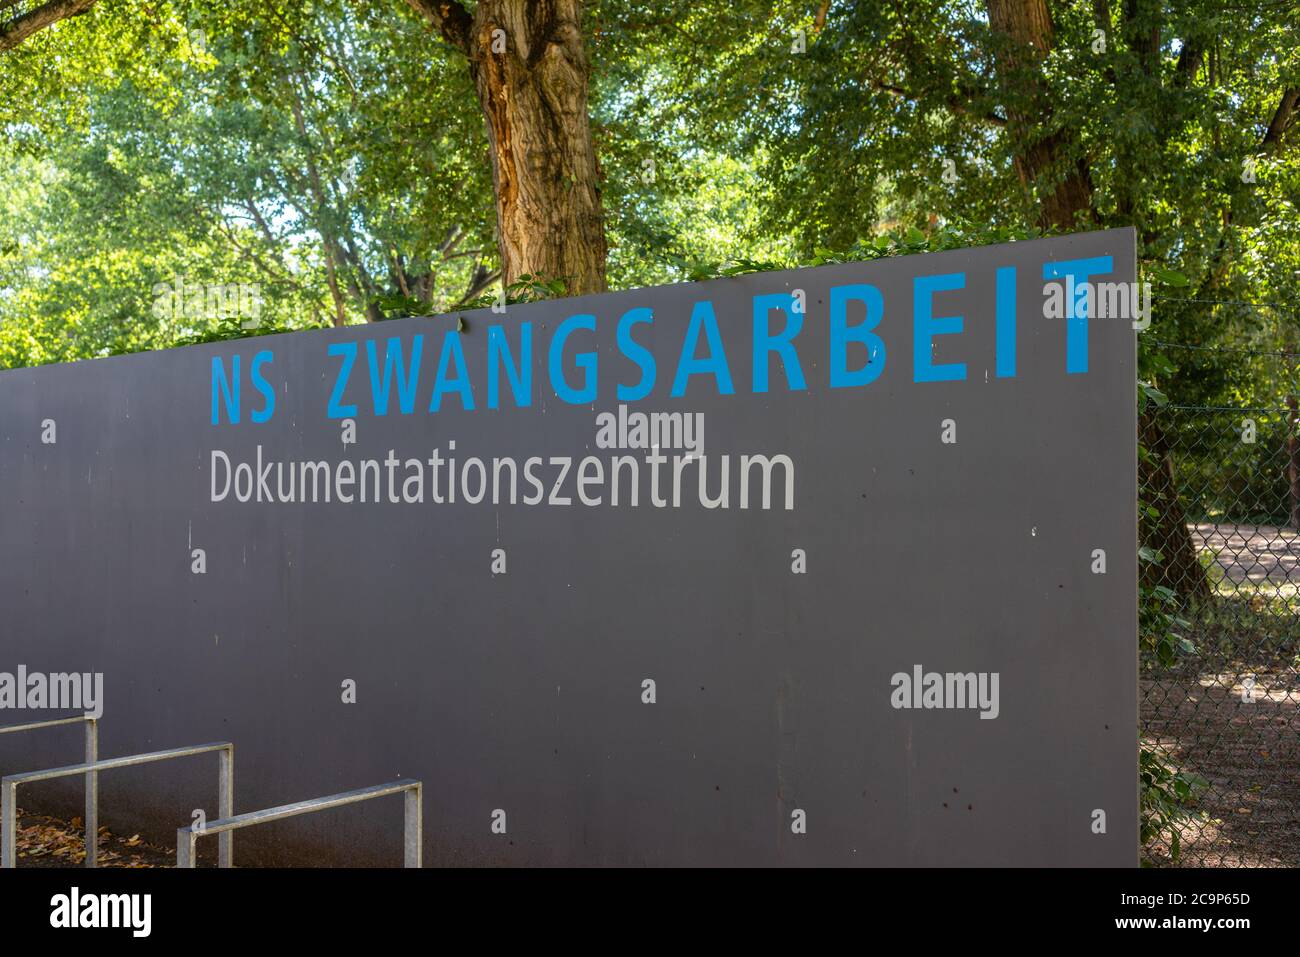 NS Zwangsarbeit Dokumentationszentrum - Centre de documentation du travail forcé à l'époque de l'Allemagne nazie, Berlin Schöneweide, Allemagne Banque D'Images